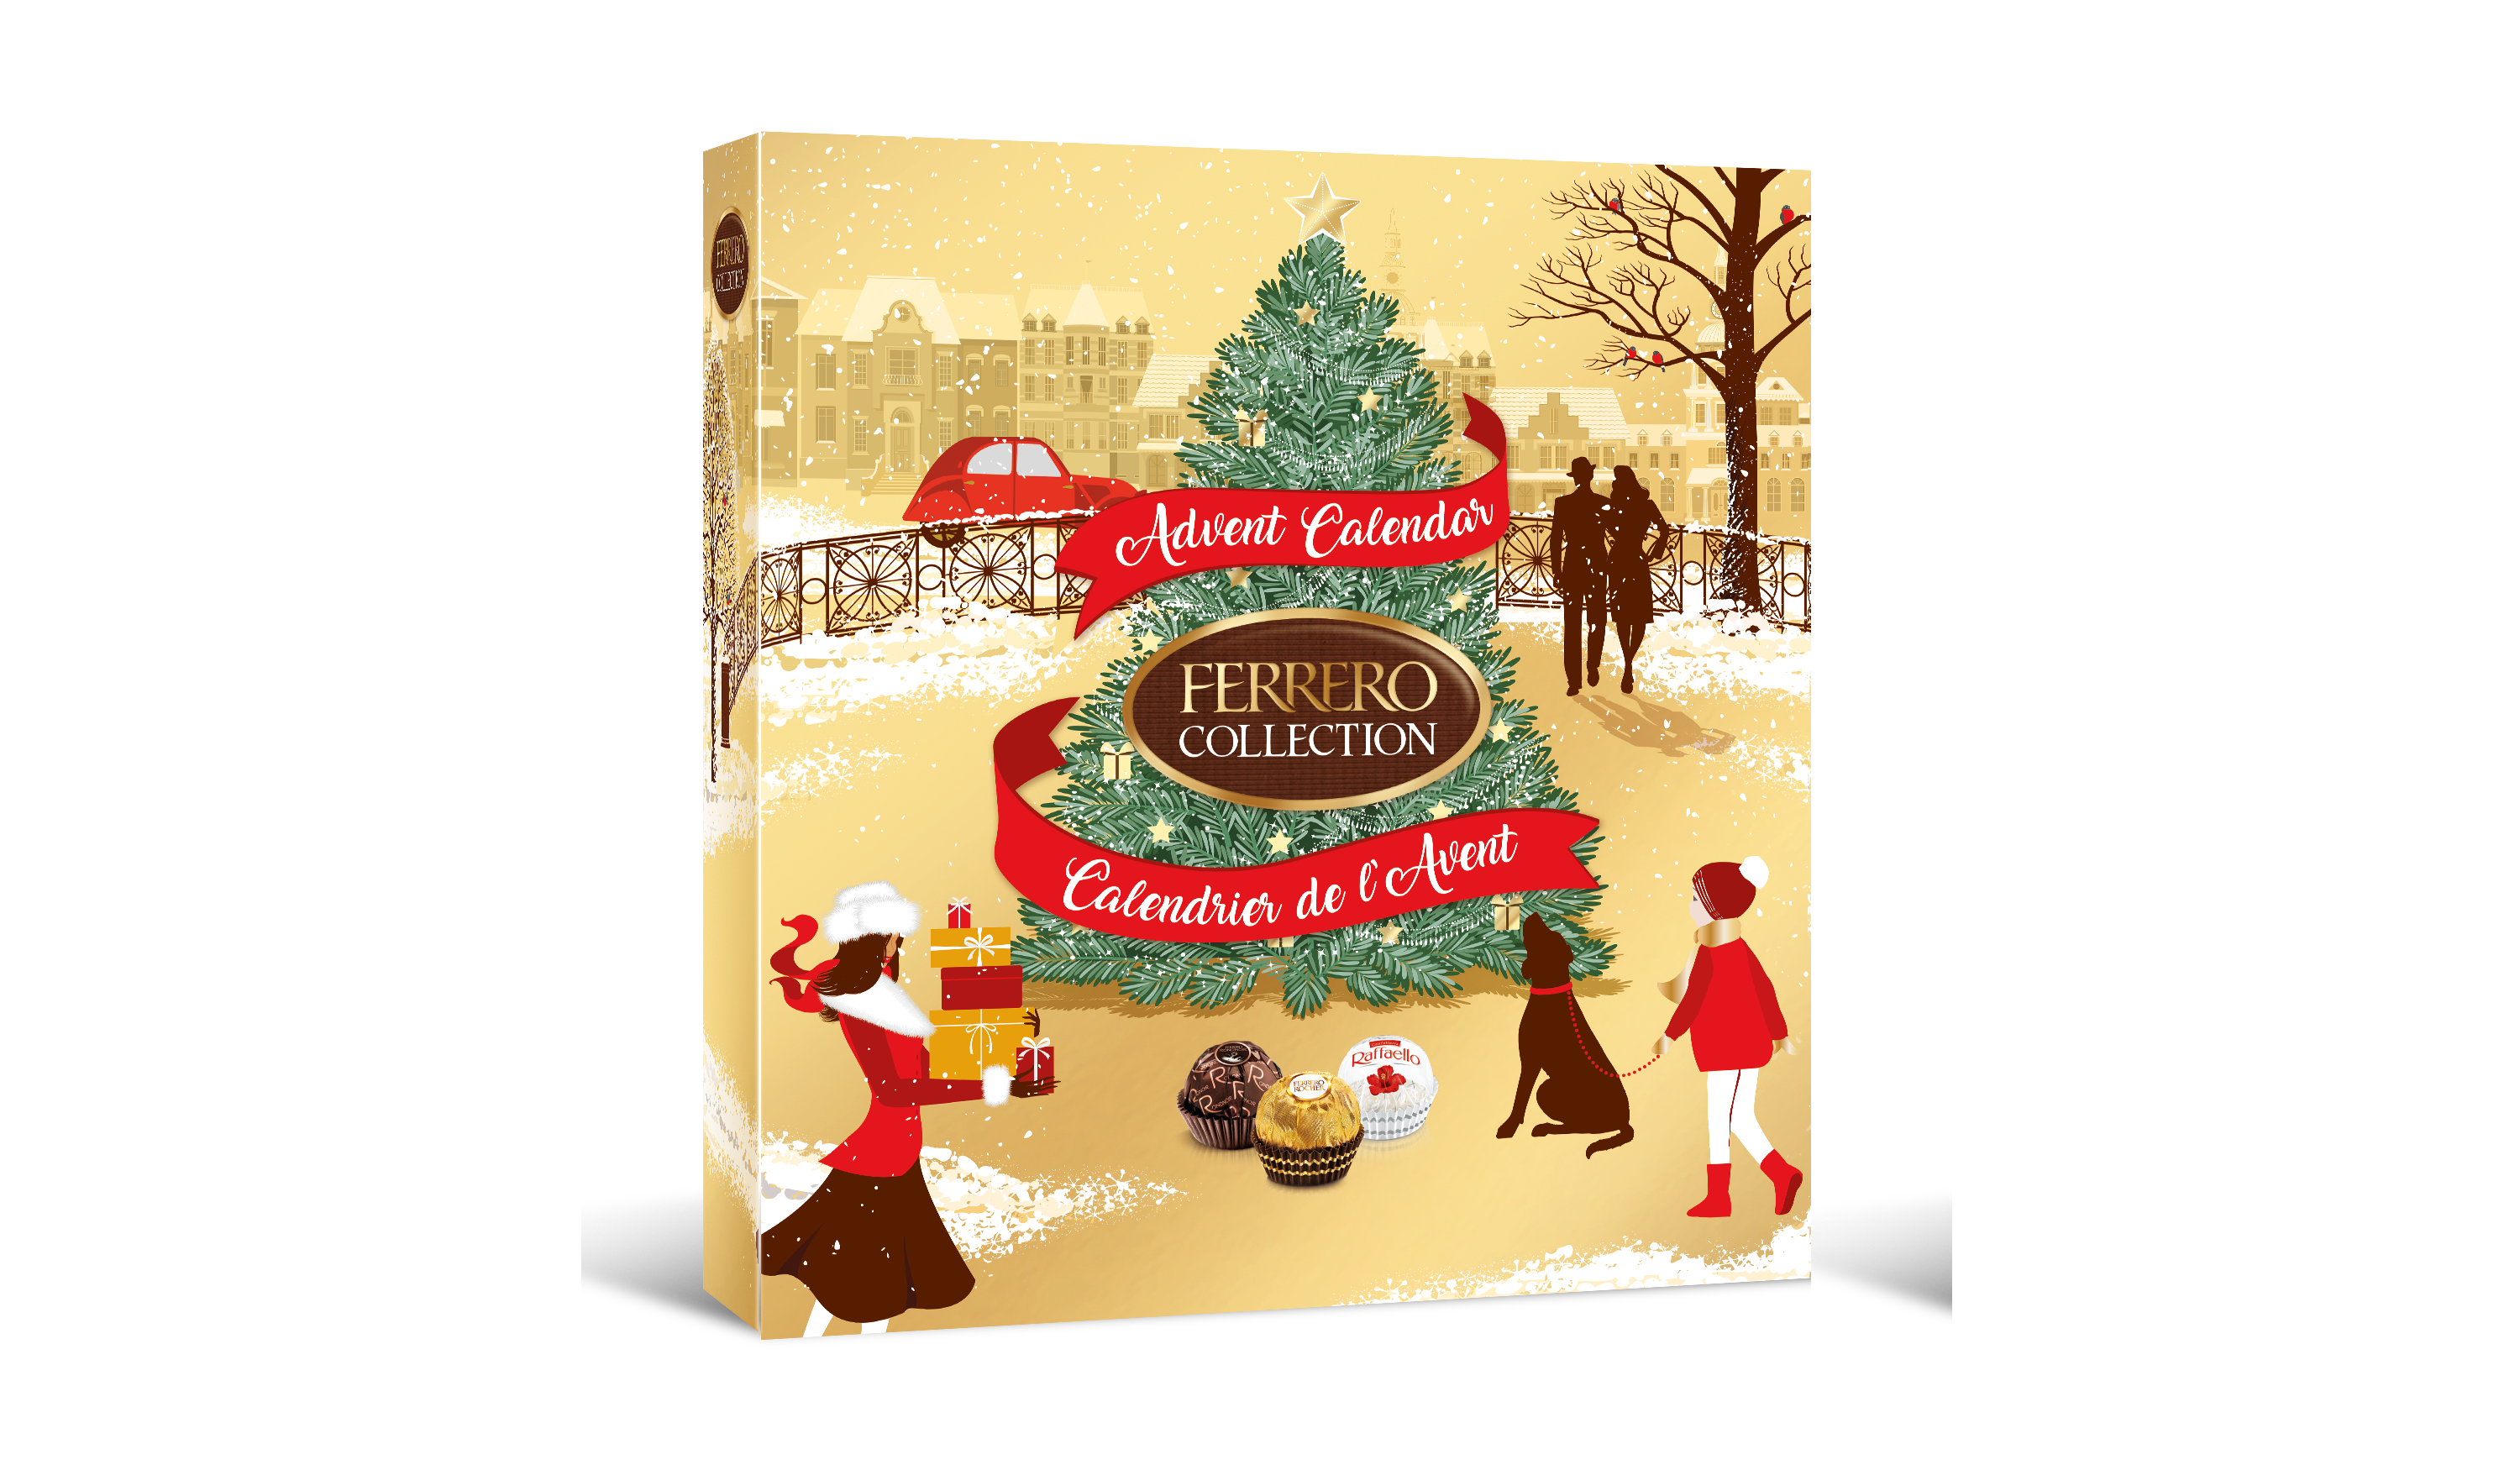 Ferrero-Collection-Advent-Calendar-271g-new-facade2.png